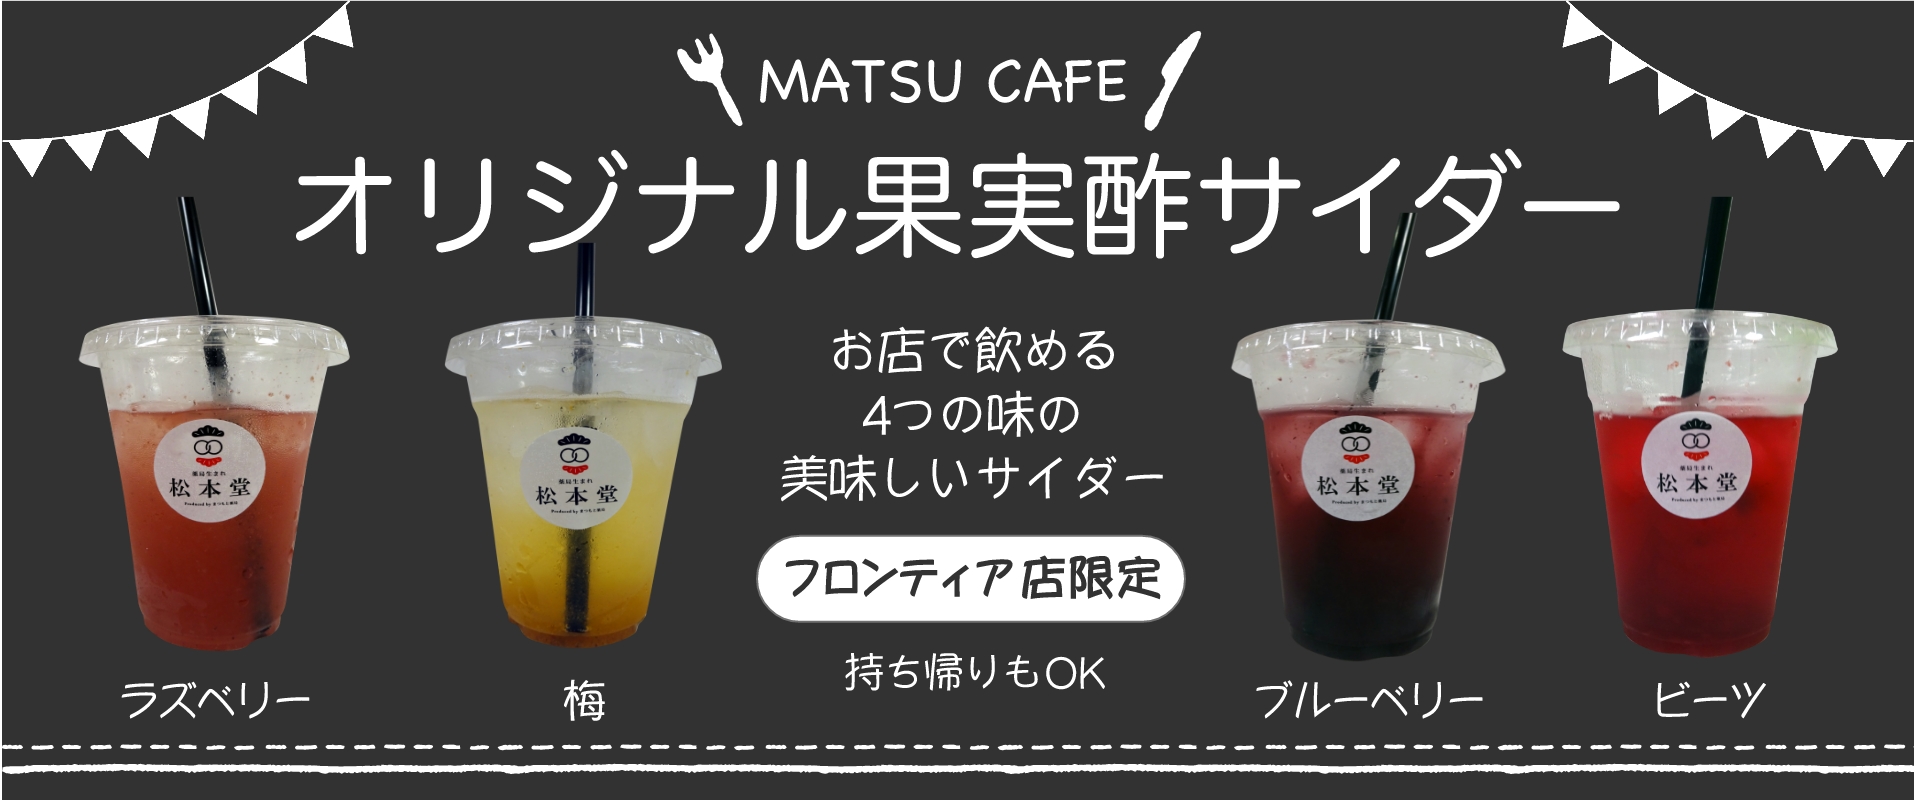 MATSUCAFE オリジナル果汁酢サイダー